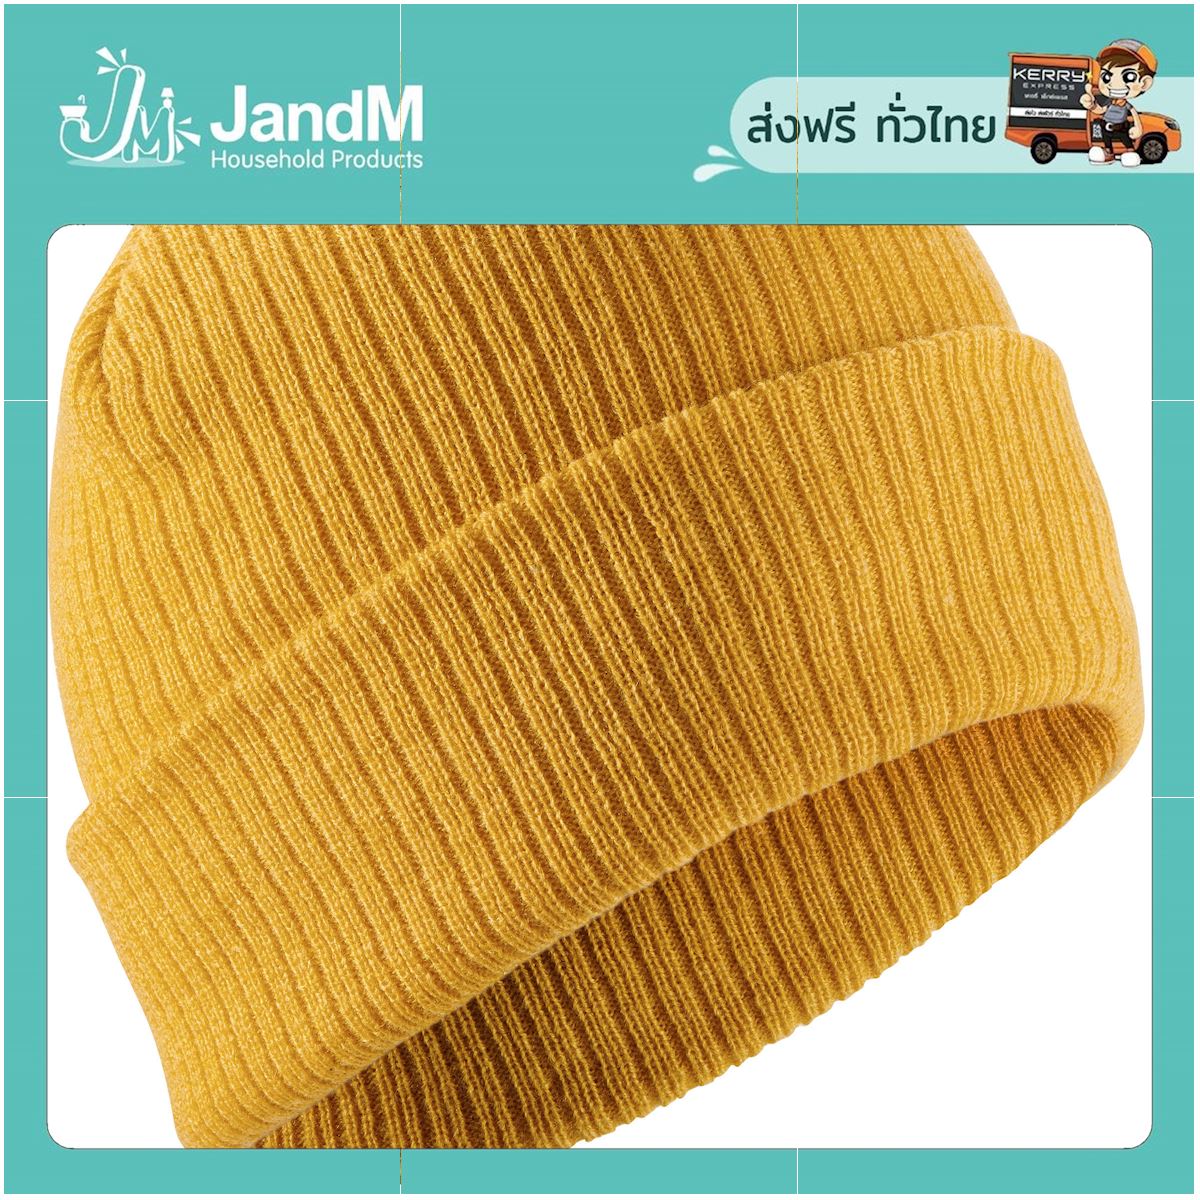 JandM หมวกสกีสำหรับผู้ใหญ่รุ่น Fisherman (สีเหลือง OCHRE) ส่งkerry มีเก็บเงินปลายทาง